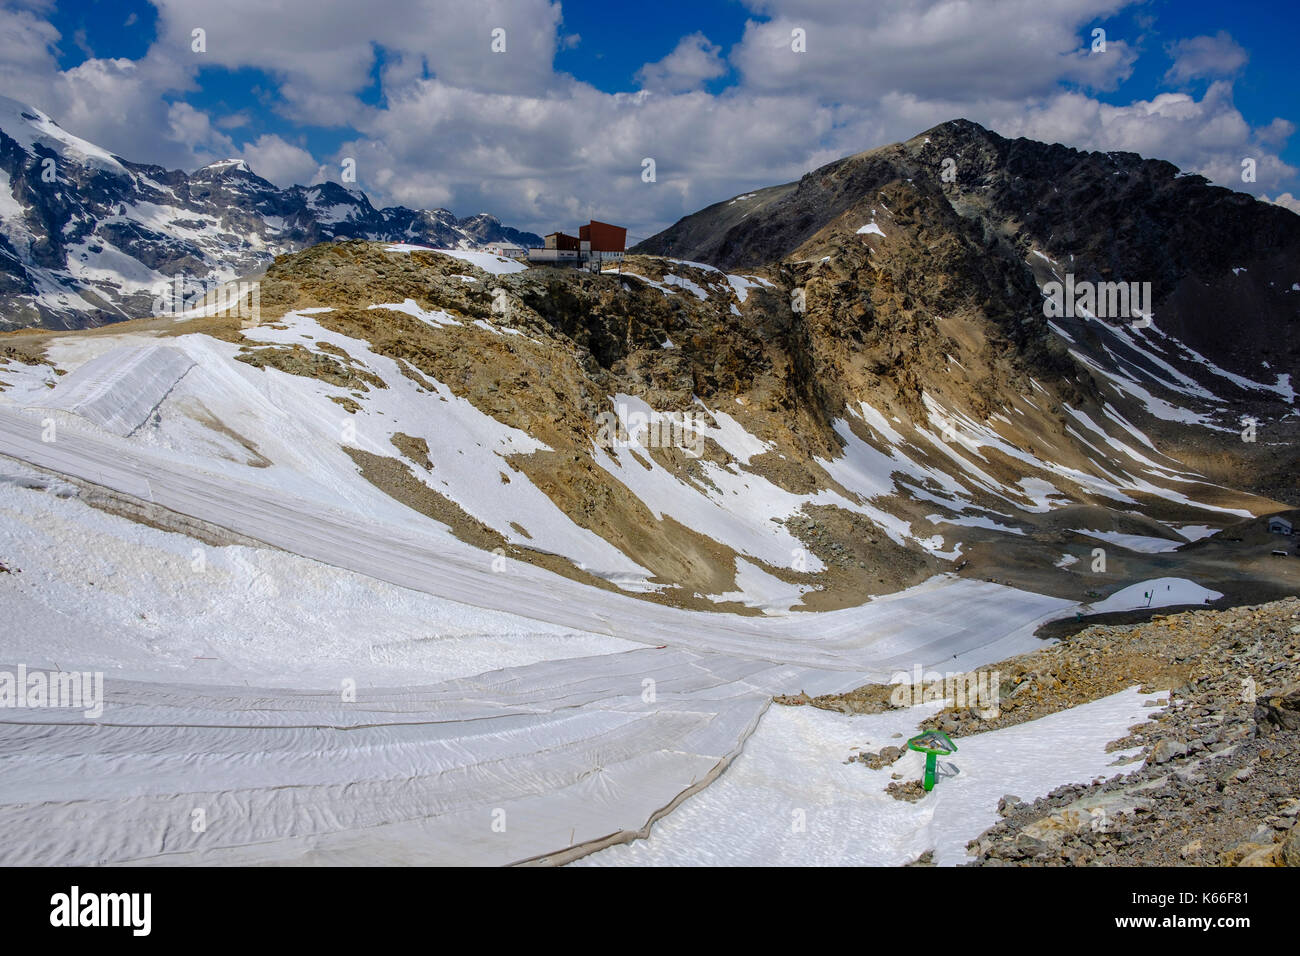 Erhaltung der Gletscher und Schneehänge durch Bedeckung des Schnees mit weißen  Kunststoffplatten bei Diavolezza Stockfotografie - Alamy